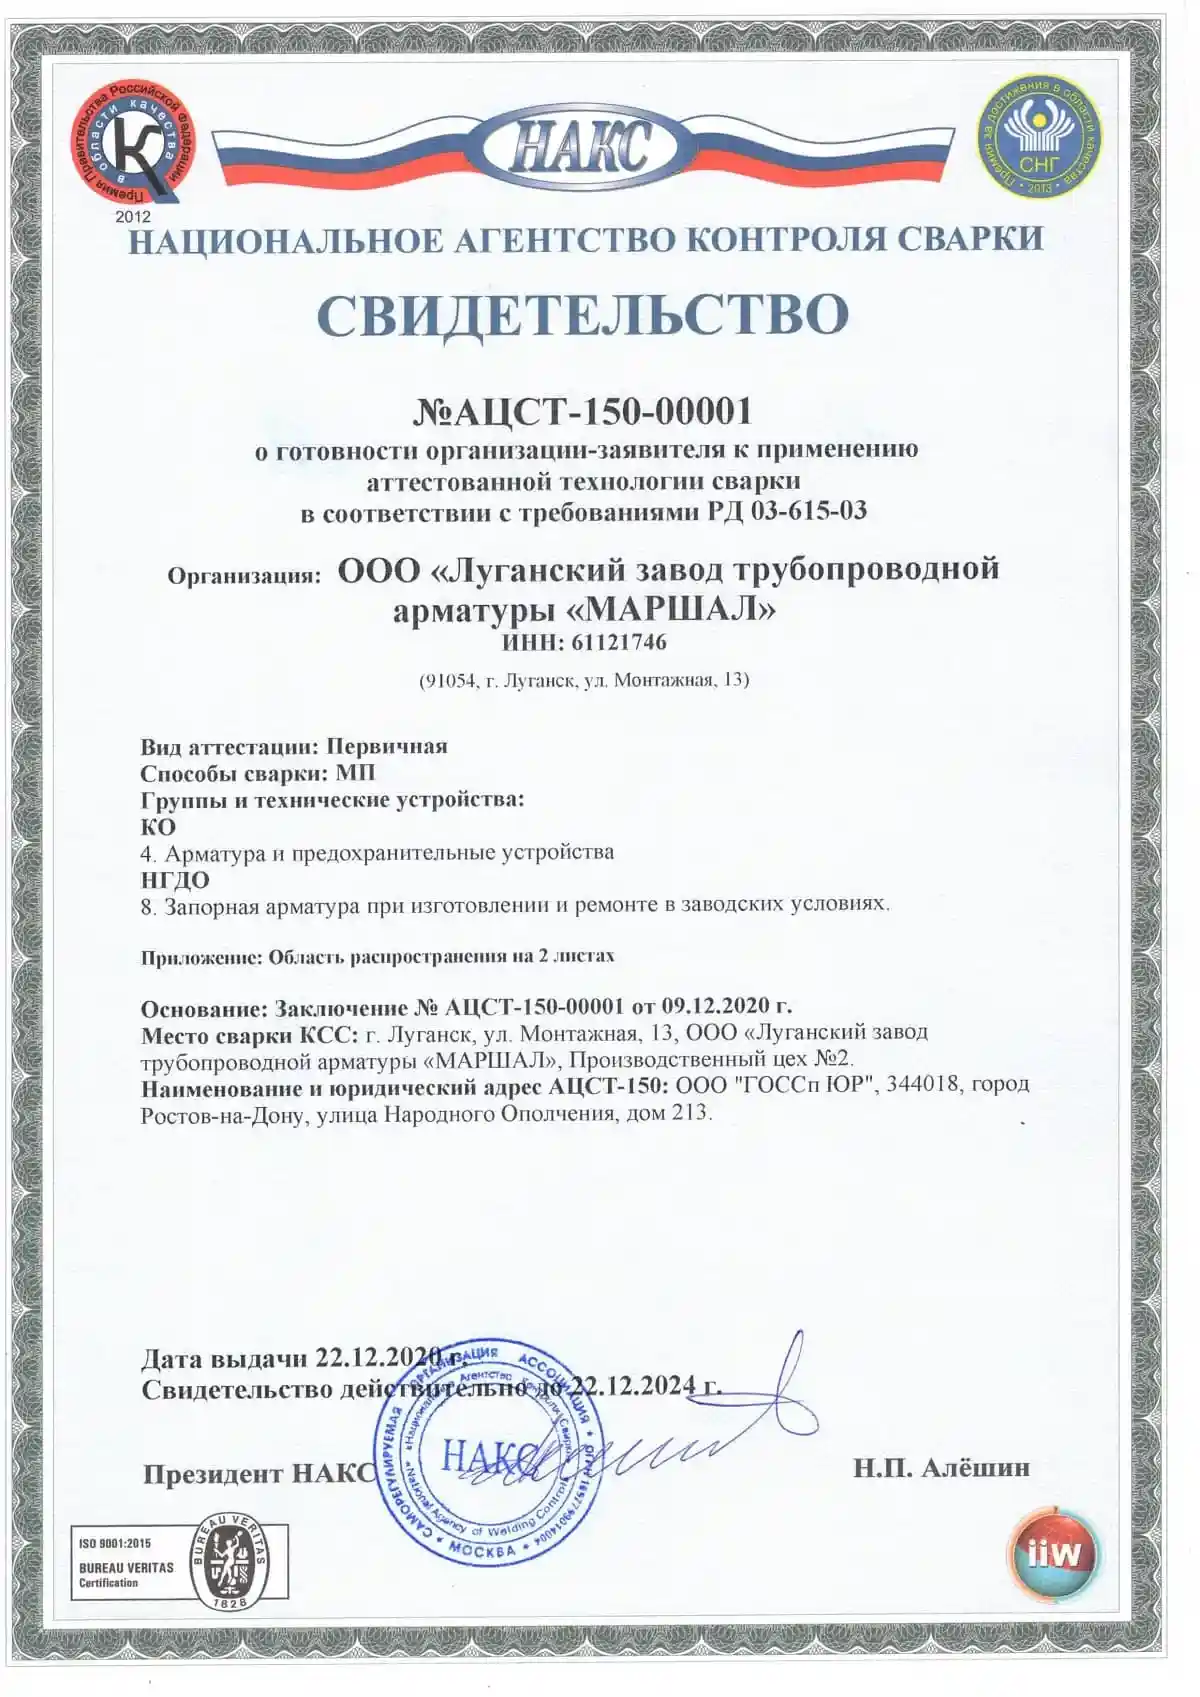 Сертификат Национального агентства сварки АЦСТ-150-00001 о соответствии требованиям РД 03-615-03